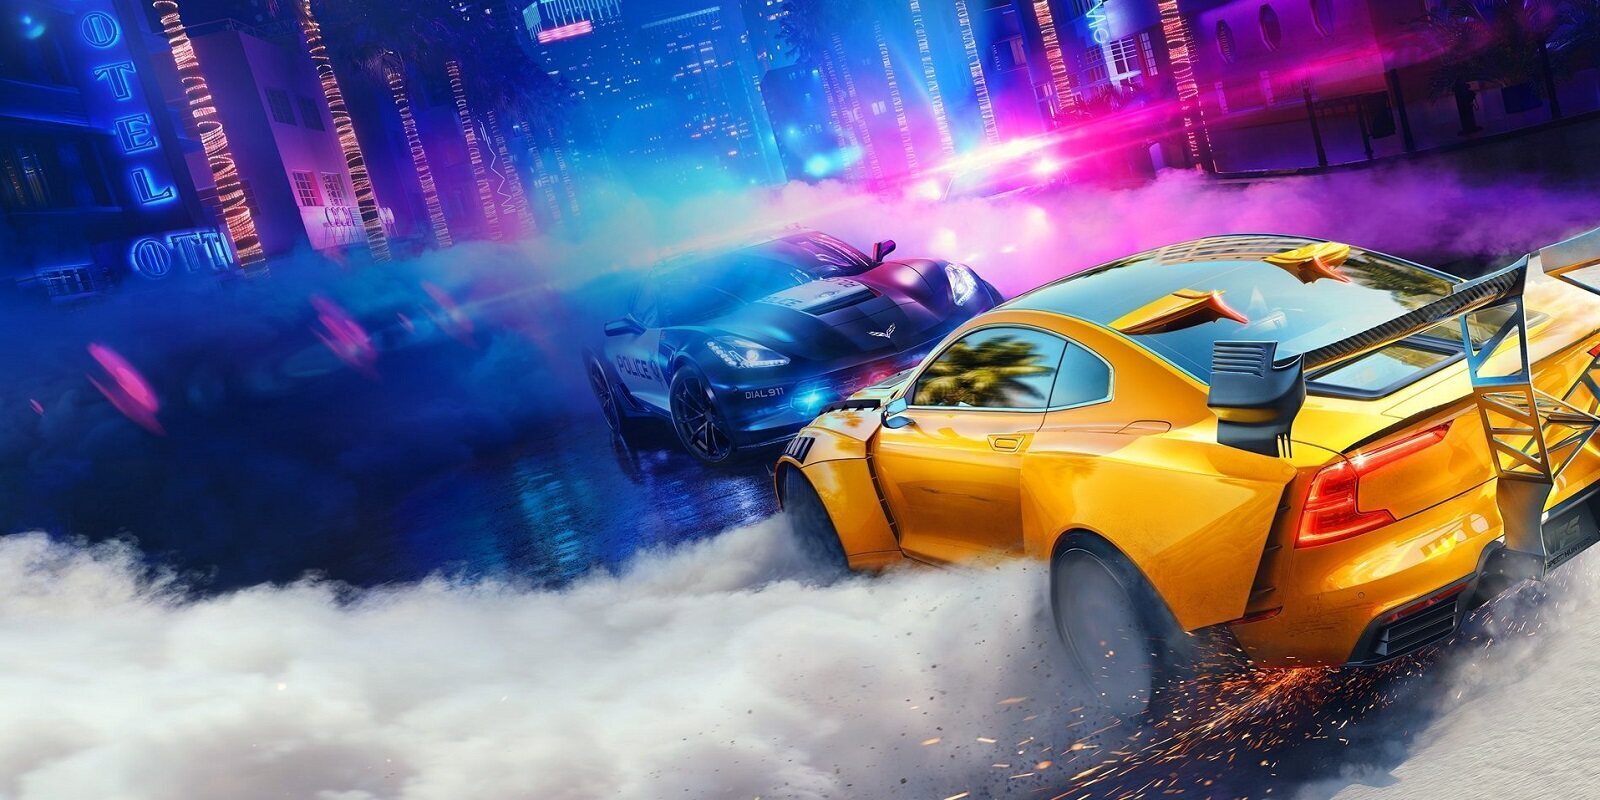 Esta sería la fecha de lanzamiento del nuevo 'Need for Speed' de Criterion según un importante insider